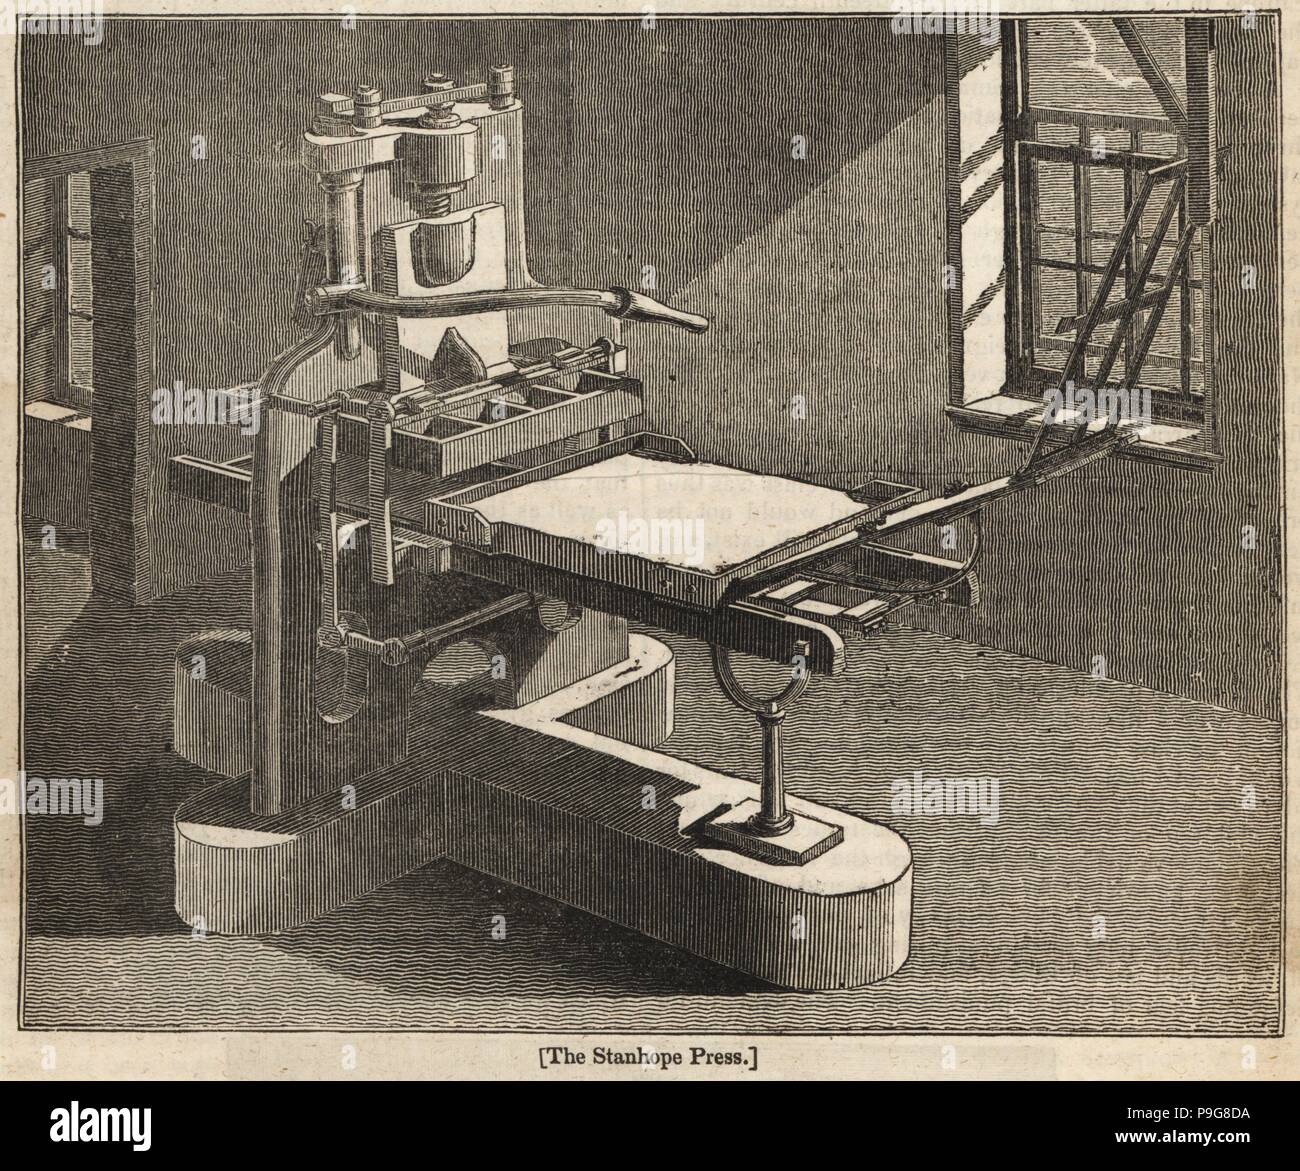 Die erste Druckerpresse erfunden von Charles Stanhope, 3rd Earl Stanhope. Holzschnitt Kupferstich aus dem Penny Magazine, Gesellschaft für die Verbreitung von Kenntnissen, 1833. Stockfoto